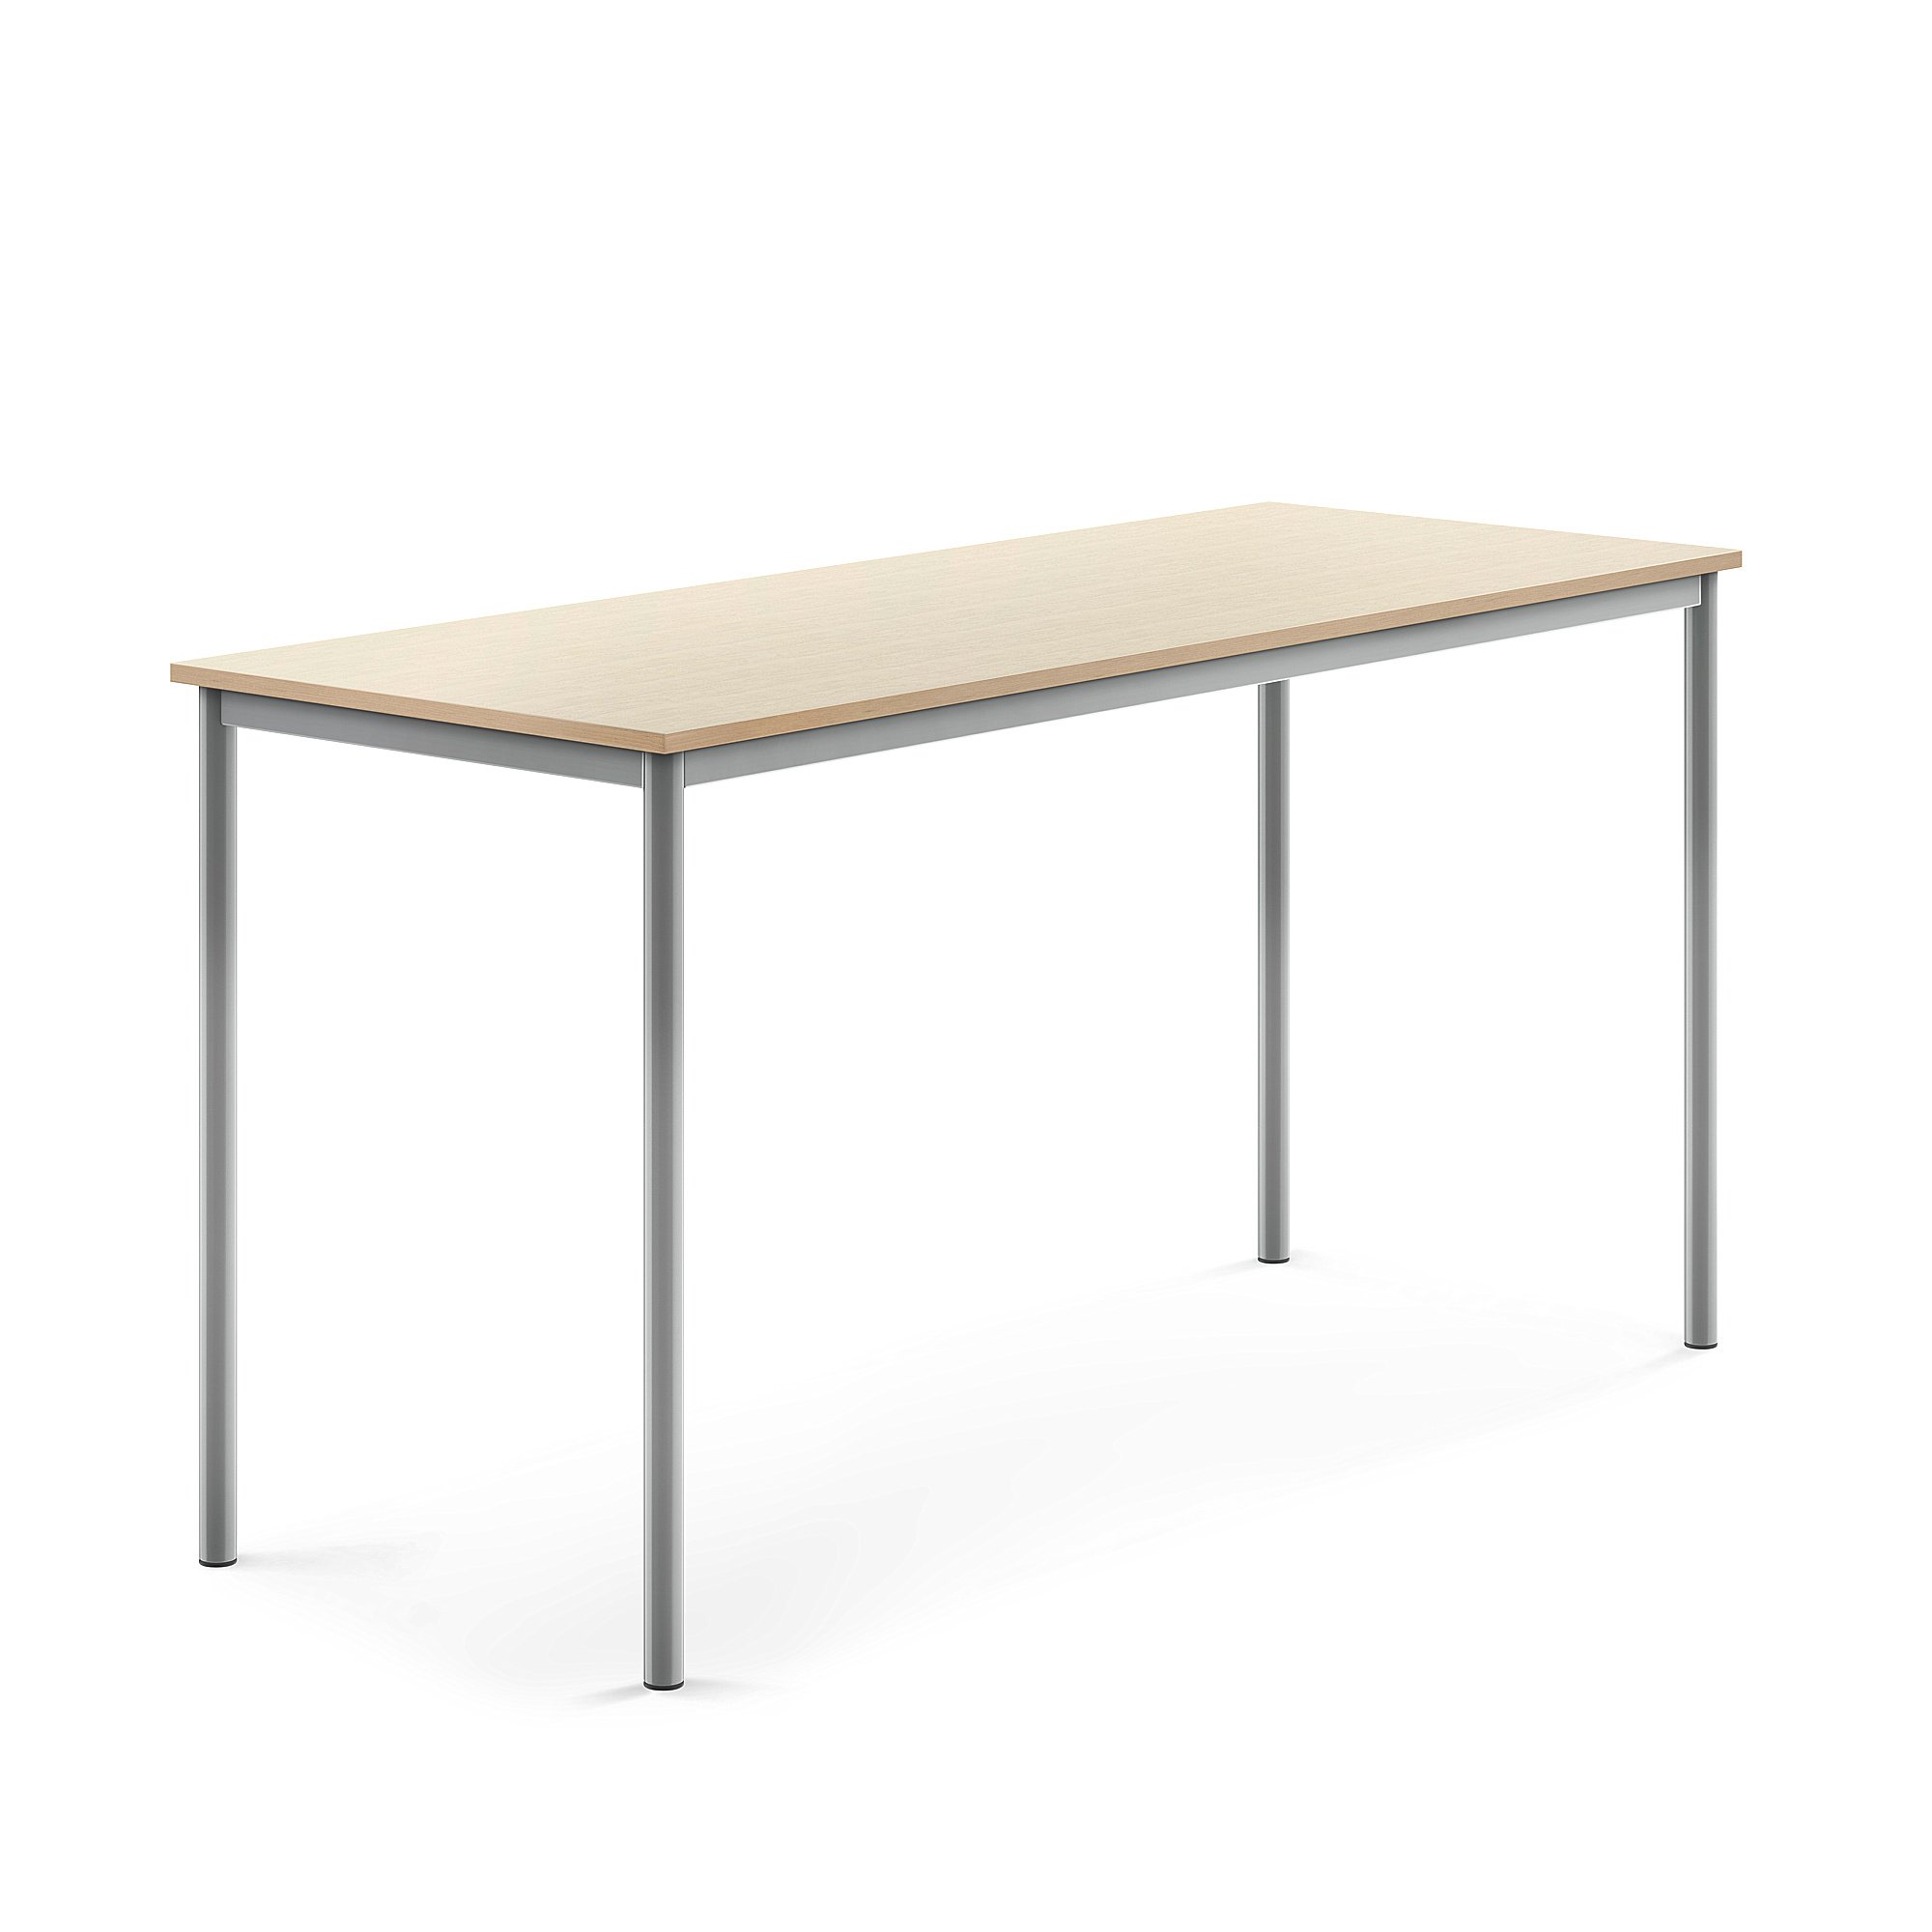 Stůl BORÅS, 1800x700x900 mm, stříbrné nohy, HPL deska, bříza